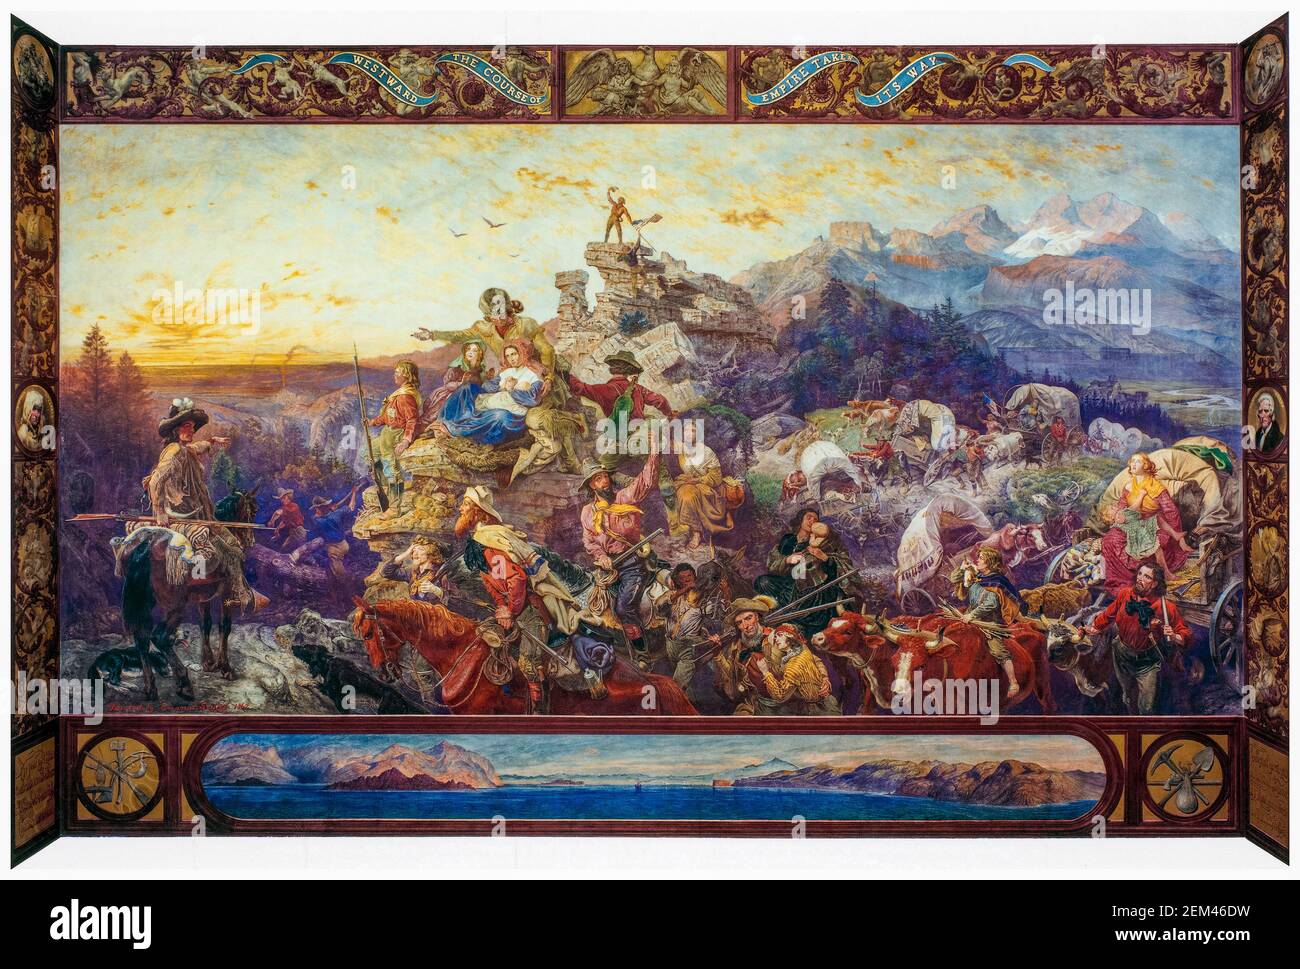 Nach Westen nimmt der Verlauf des Reiches seinen Weg, Wandmalerei von Emanuel Leutze, 1862 Stockfoto